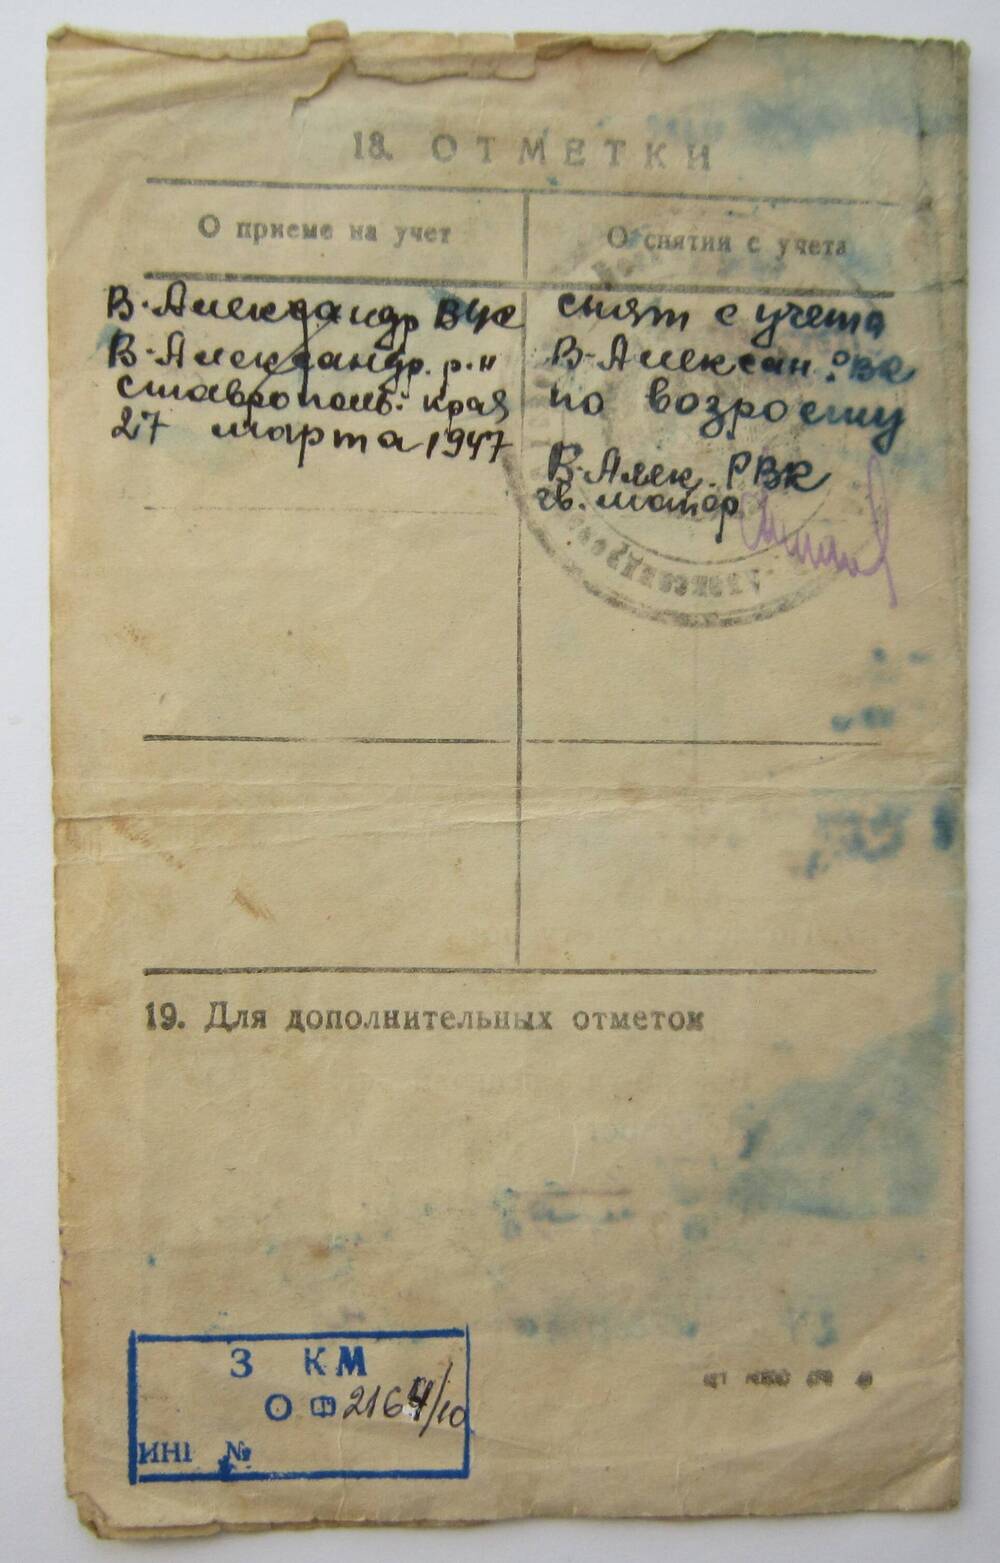 Удостоверение временное взамен военного билета на имя Диденко Георгия Никитовича. 27.03.1947 г. СССР.